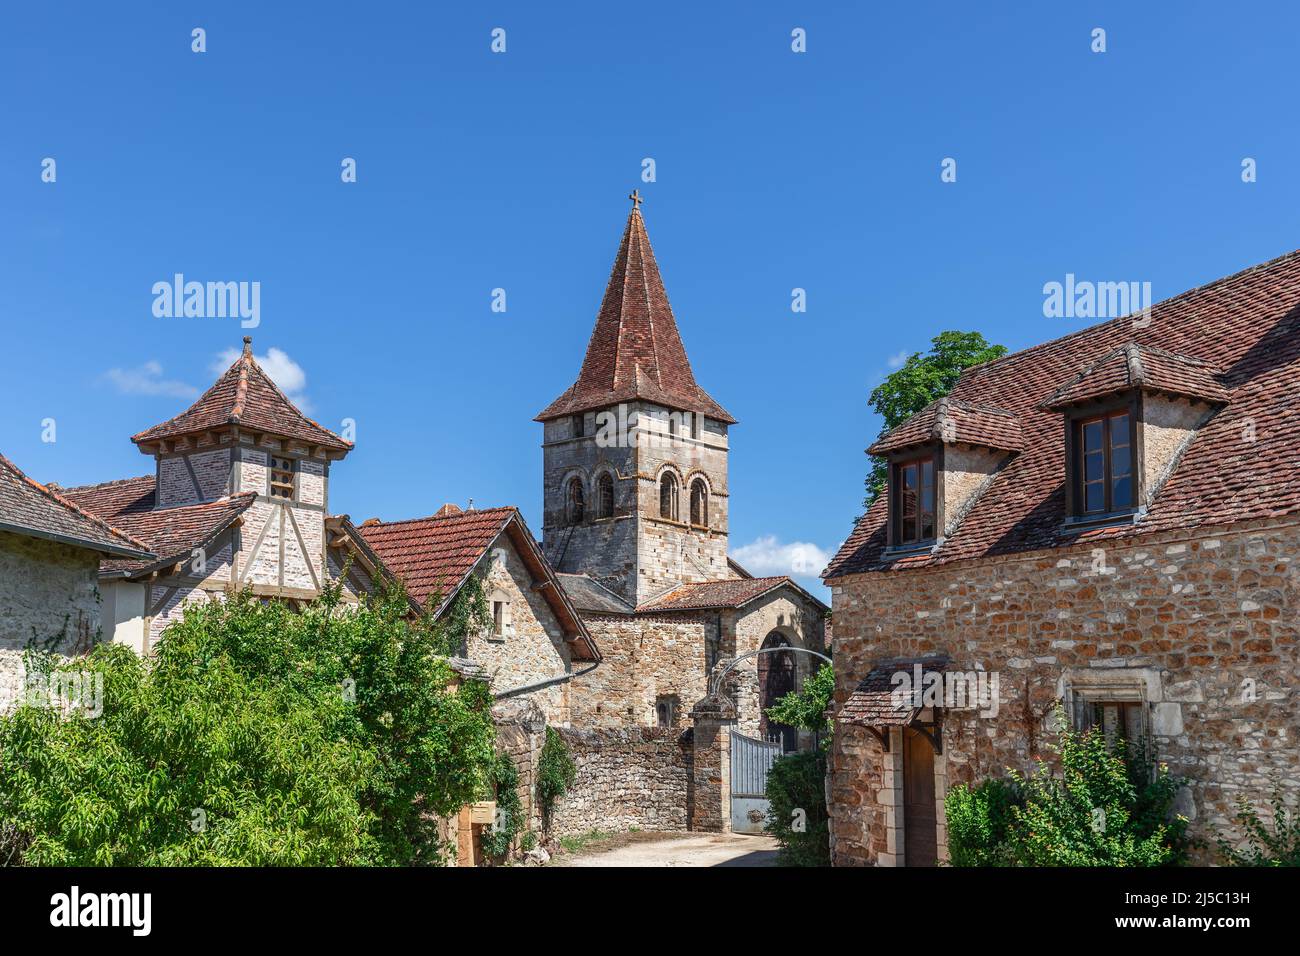 Gemauerte Ziegeldachhäuser im Zentrum des alten Carennac Dorf und 11 Jahrhundert Kirche Eglise Saint-Pierre, Lot, historische Region Quercy, Frankreich Stockfoto